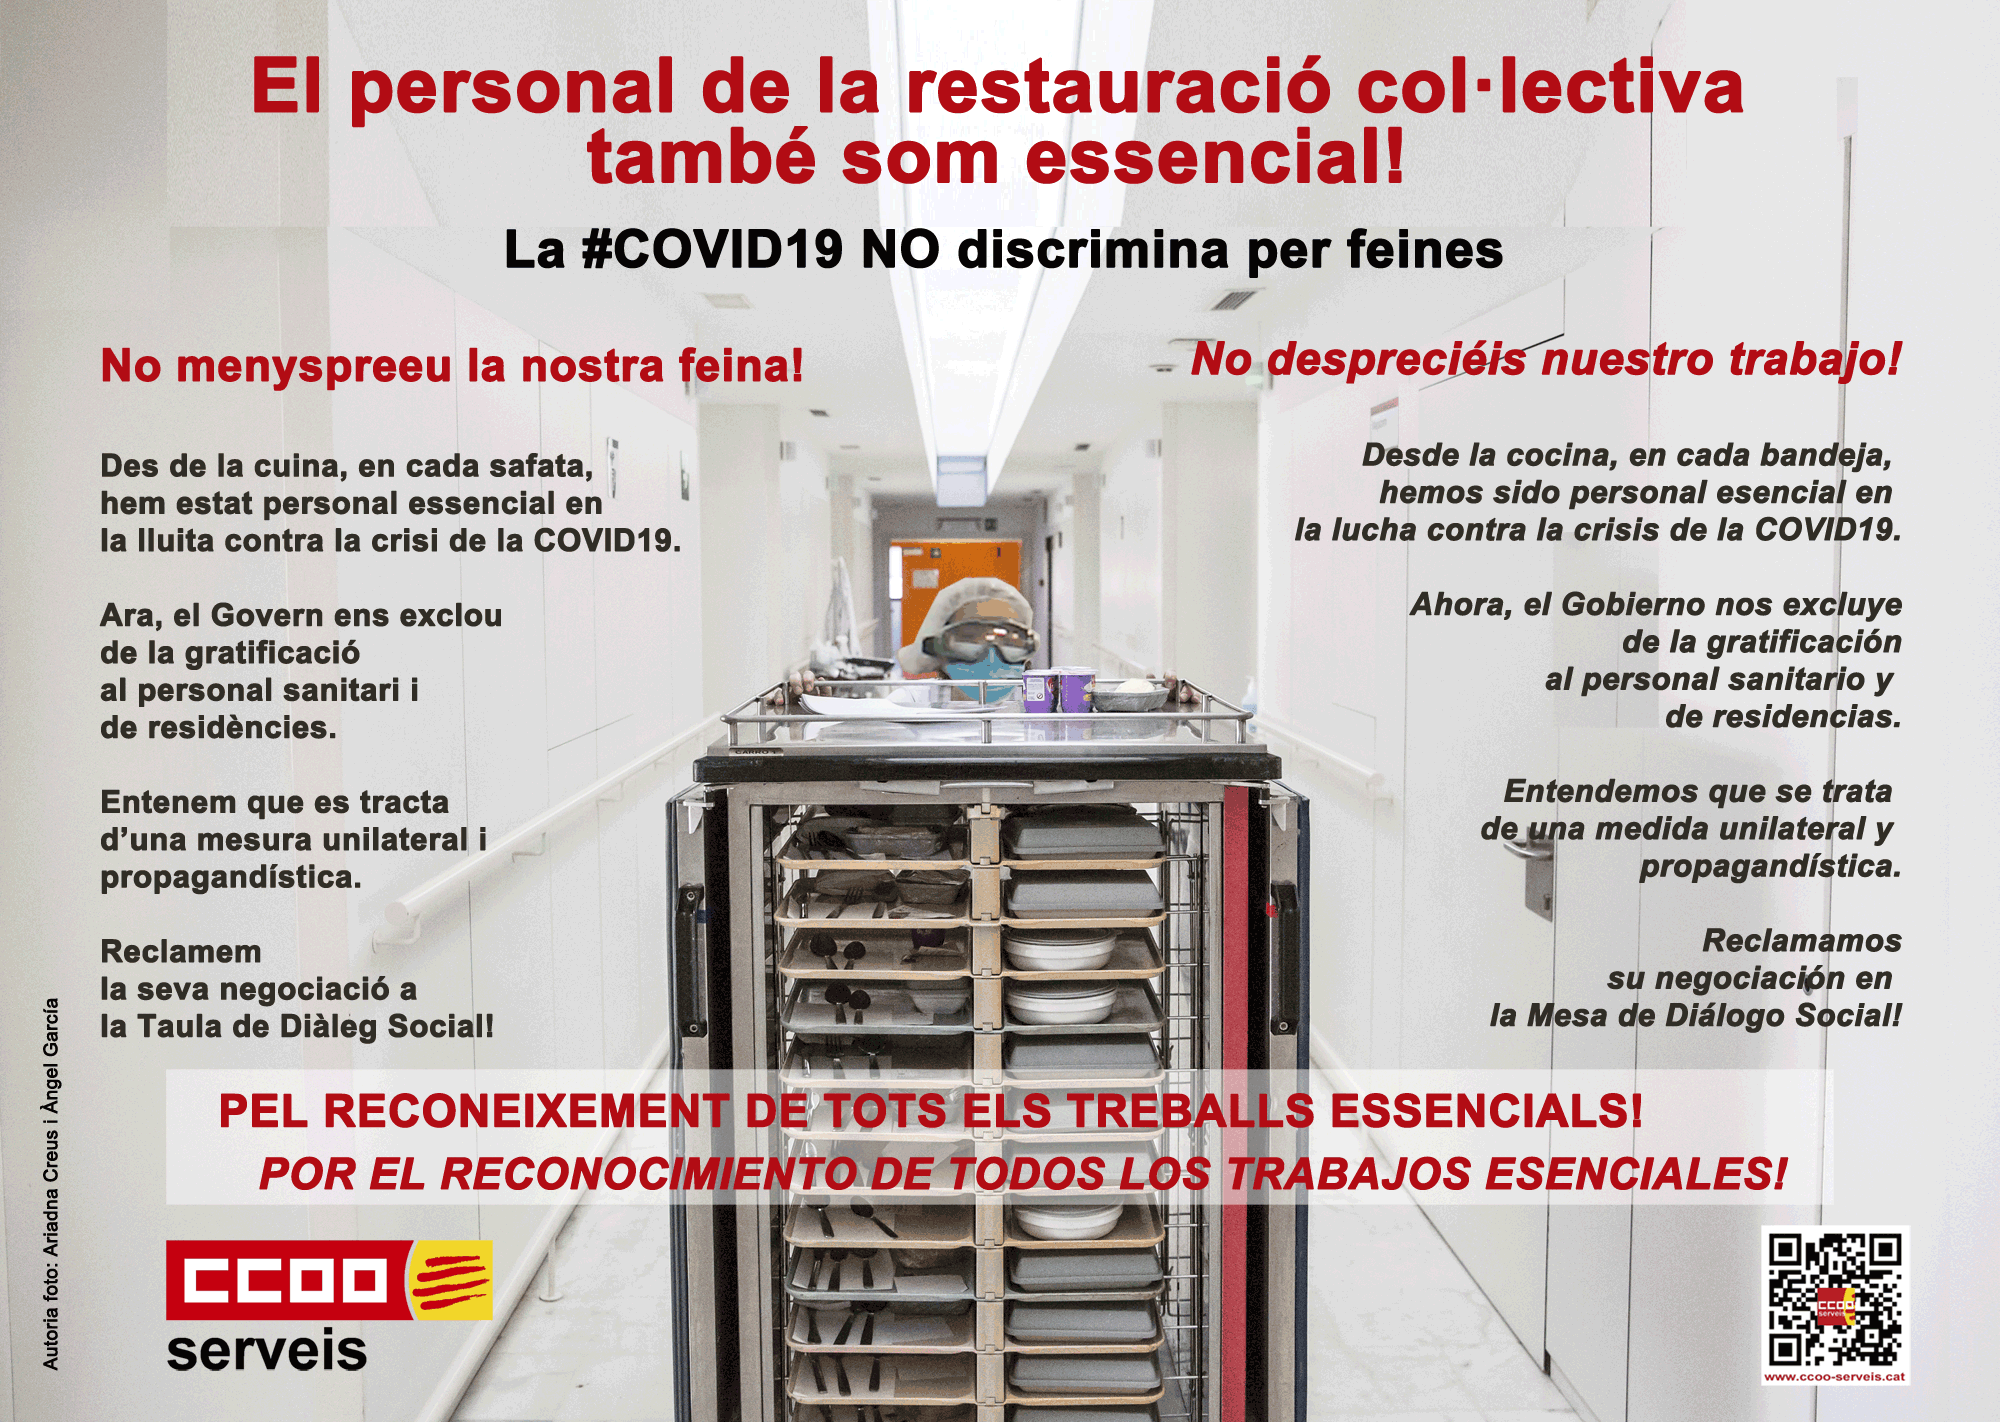 Restauració col·lectica Restauración Colectiva Colectividades Colectivitats Personal Essencials Esencial COVID!)